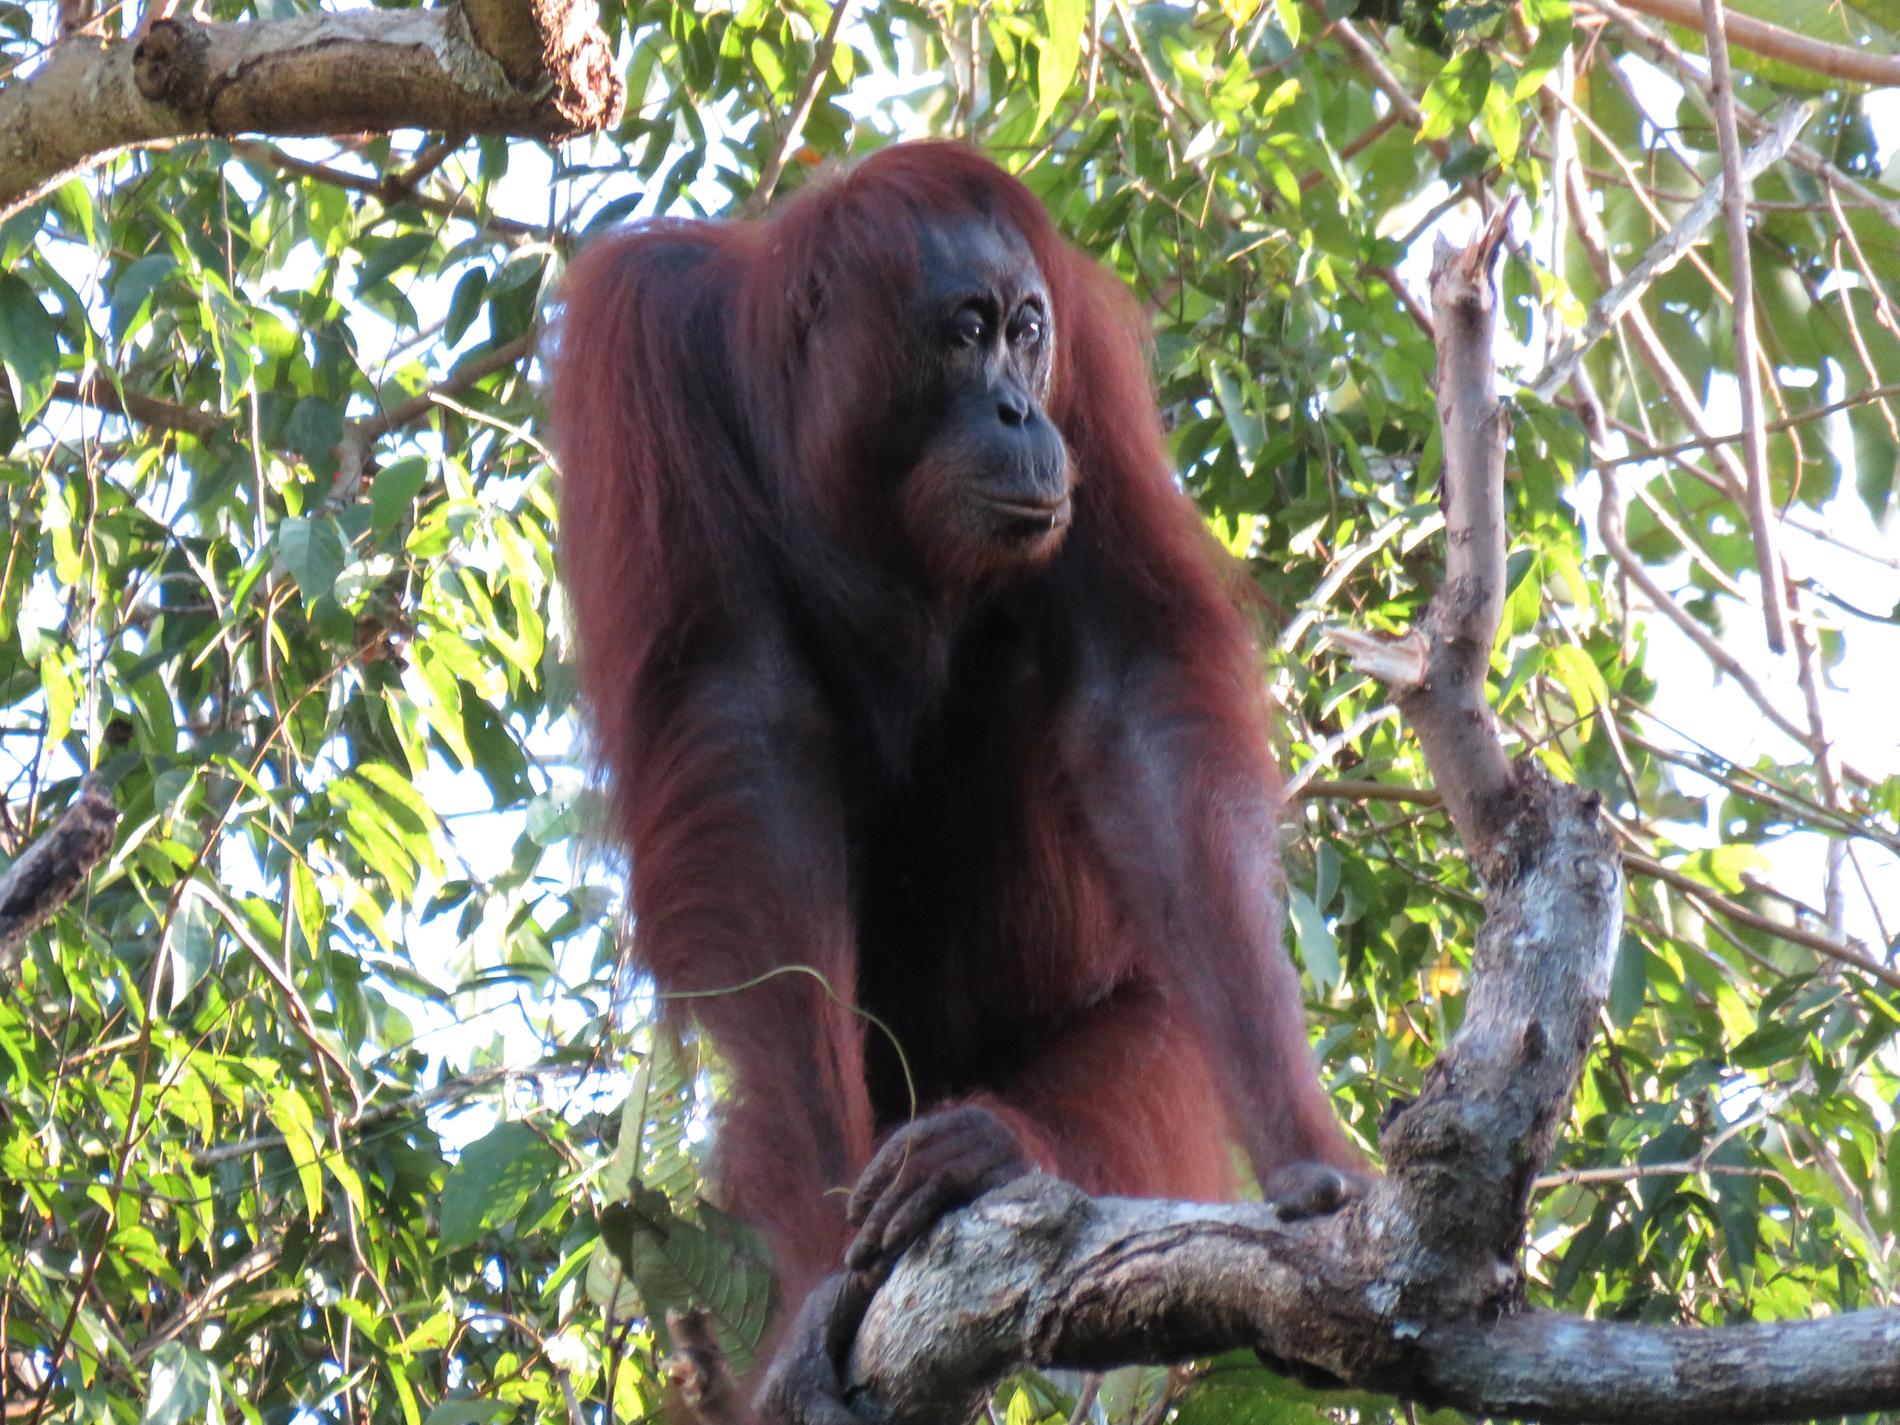 Fortfarande finns kanske 100 000 orangutanger på Borneo, men för bara 16 år sedan finns dubbelt så många.